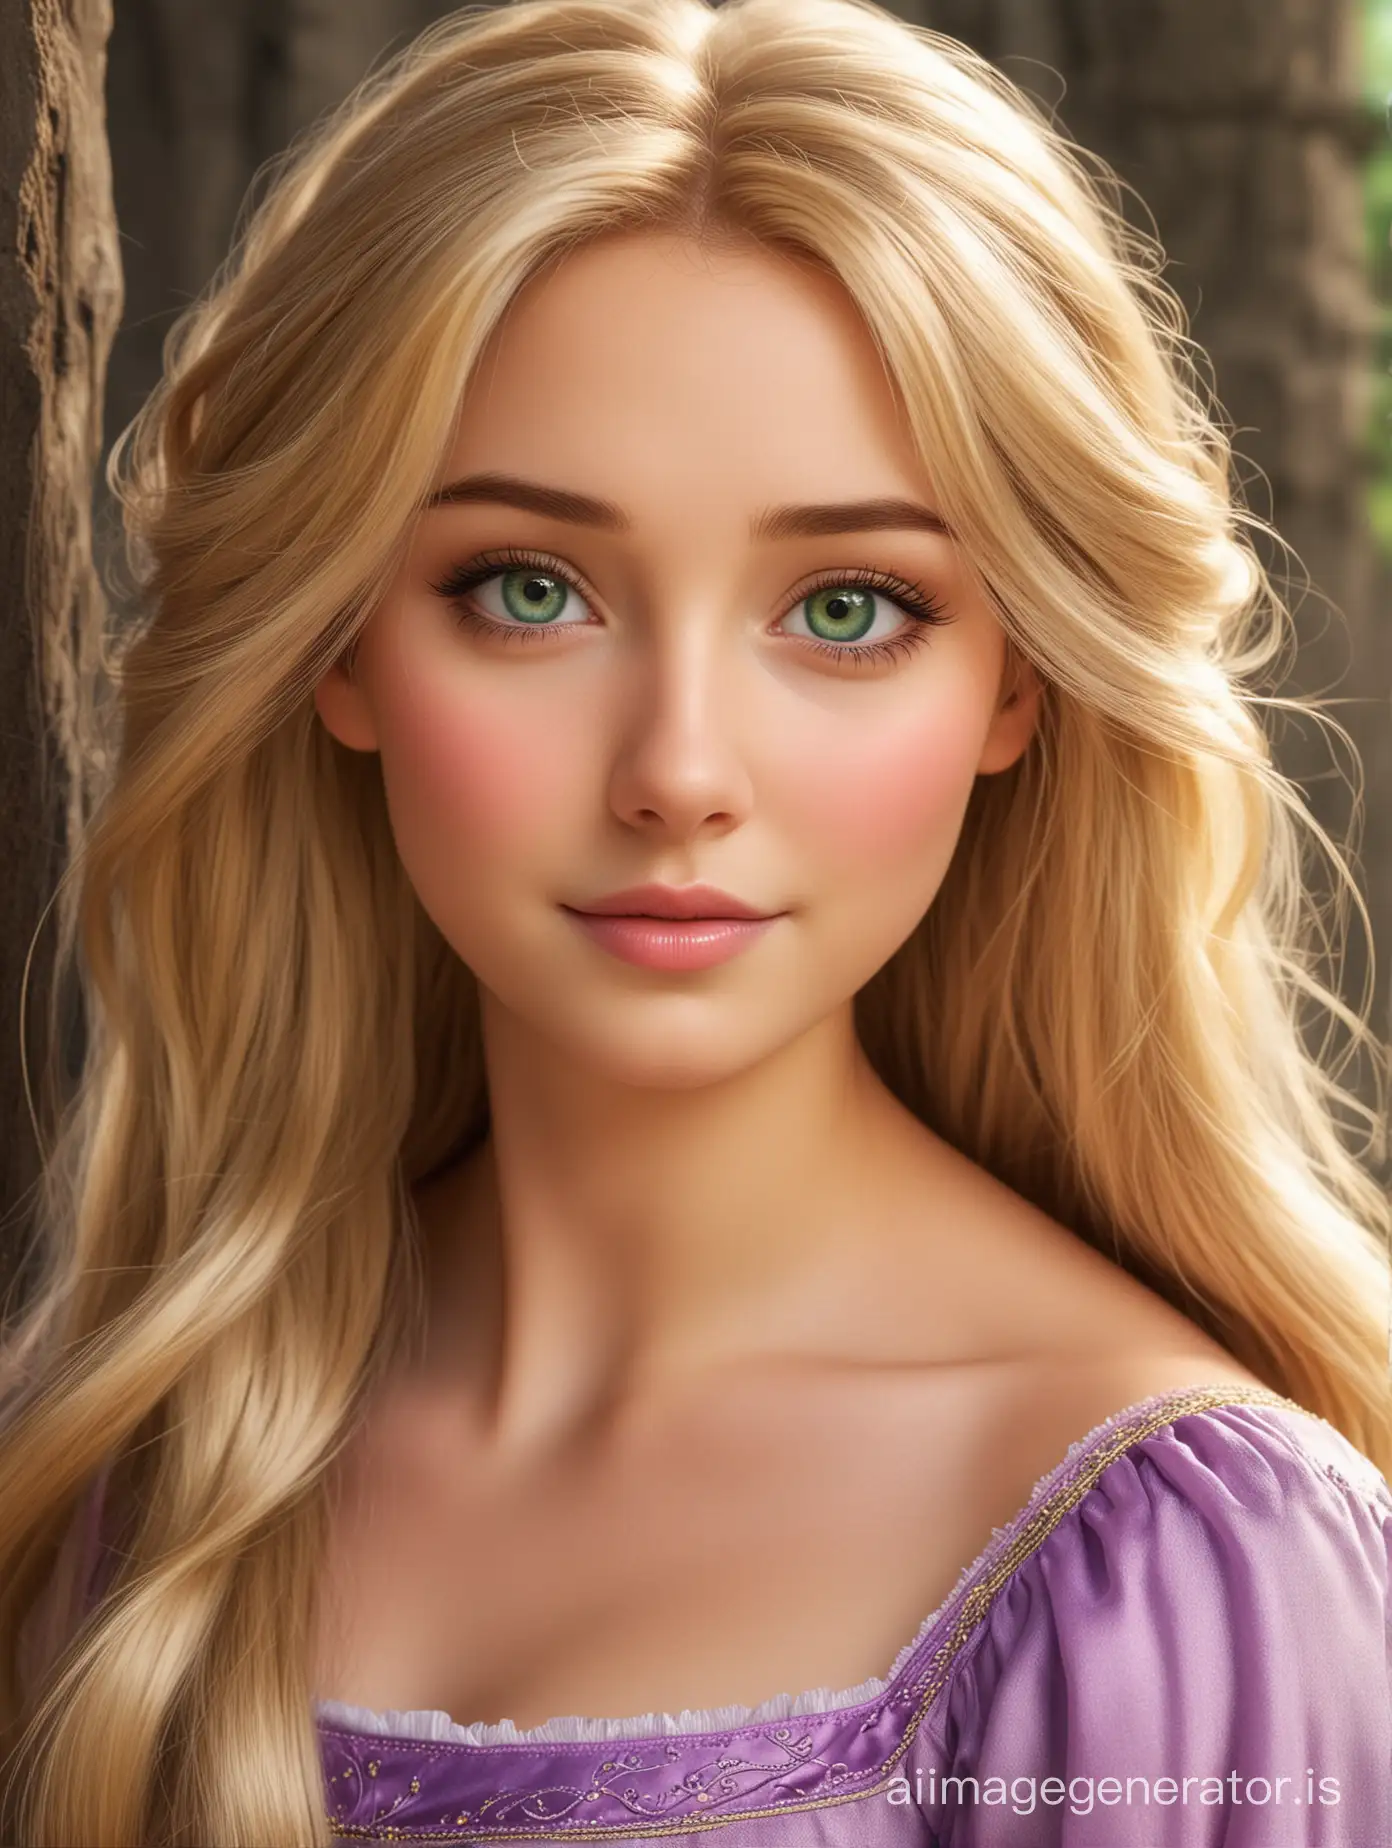 Beautiful princess Rapunzel blonde hair green eyes staring at you